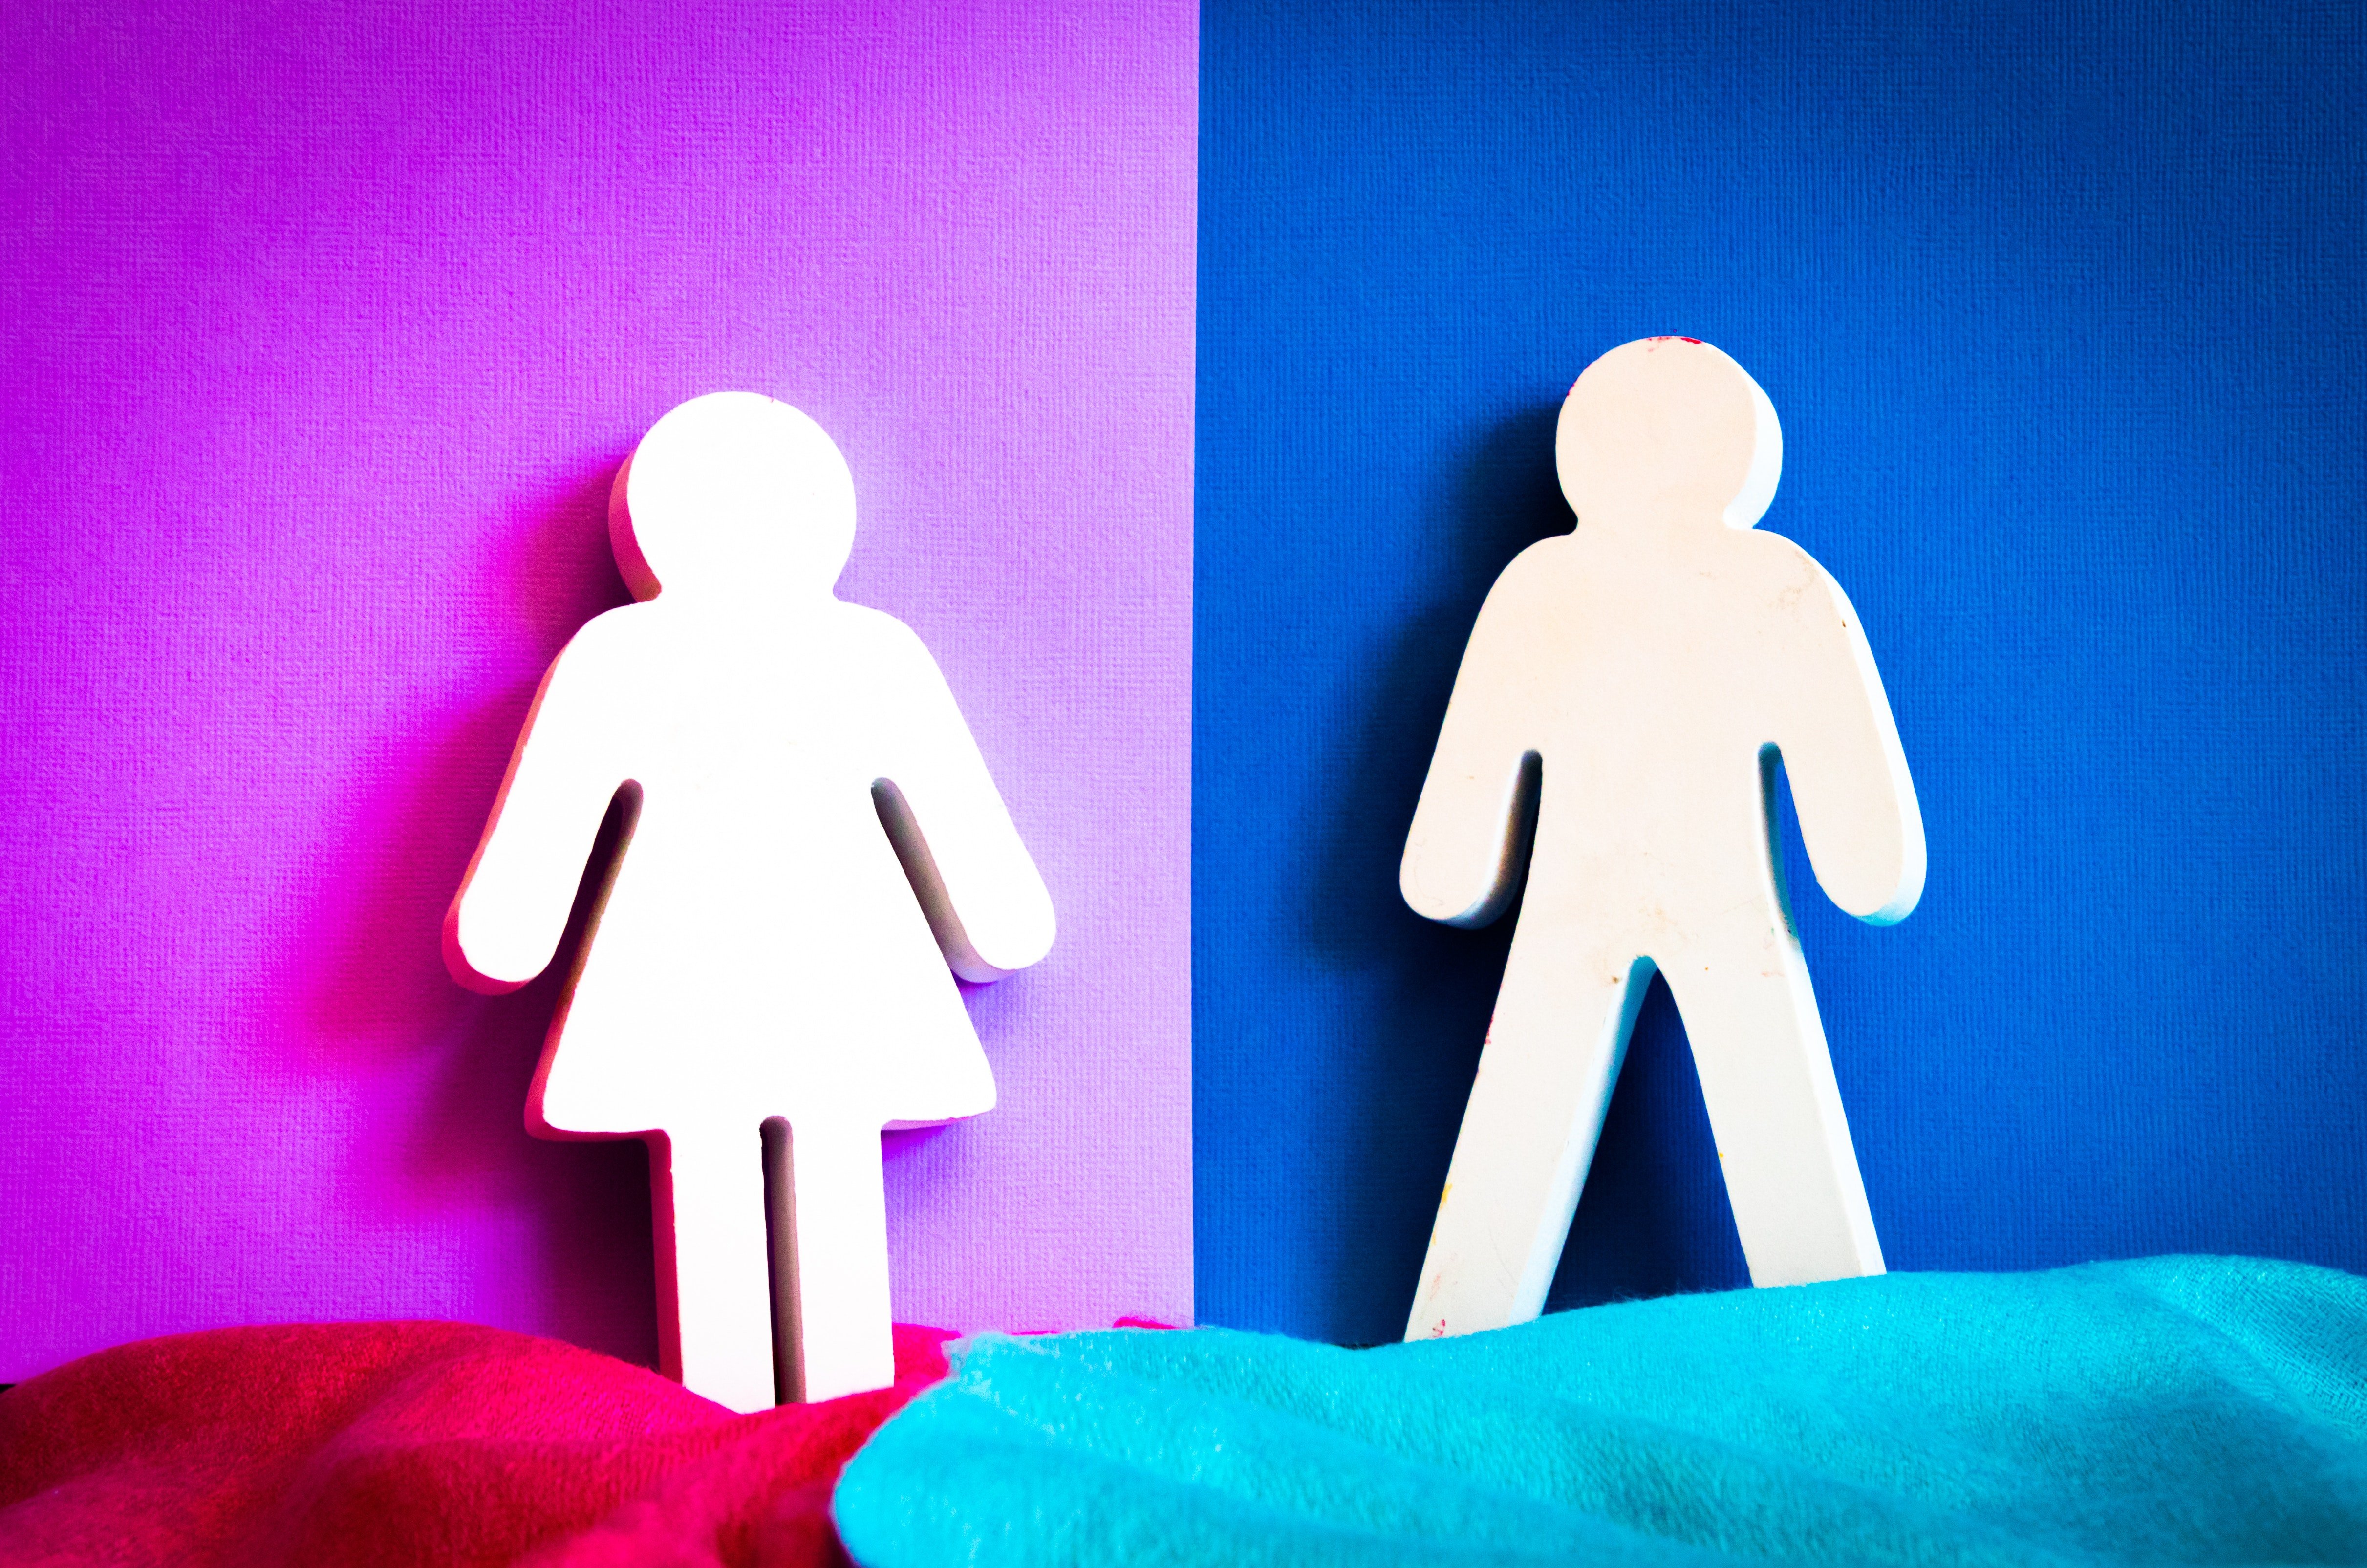 Gender Bias by Magda Ehlers on Pexels